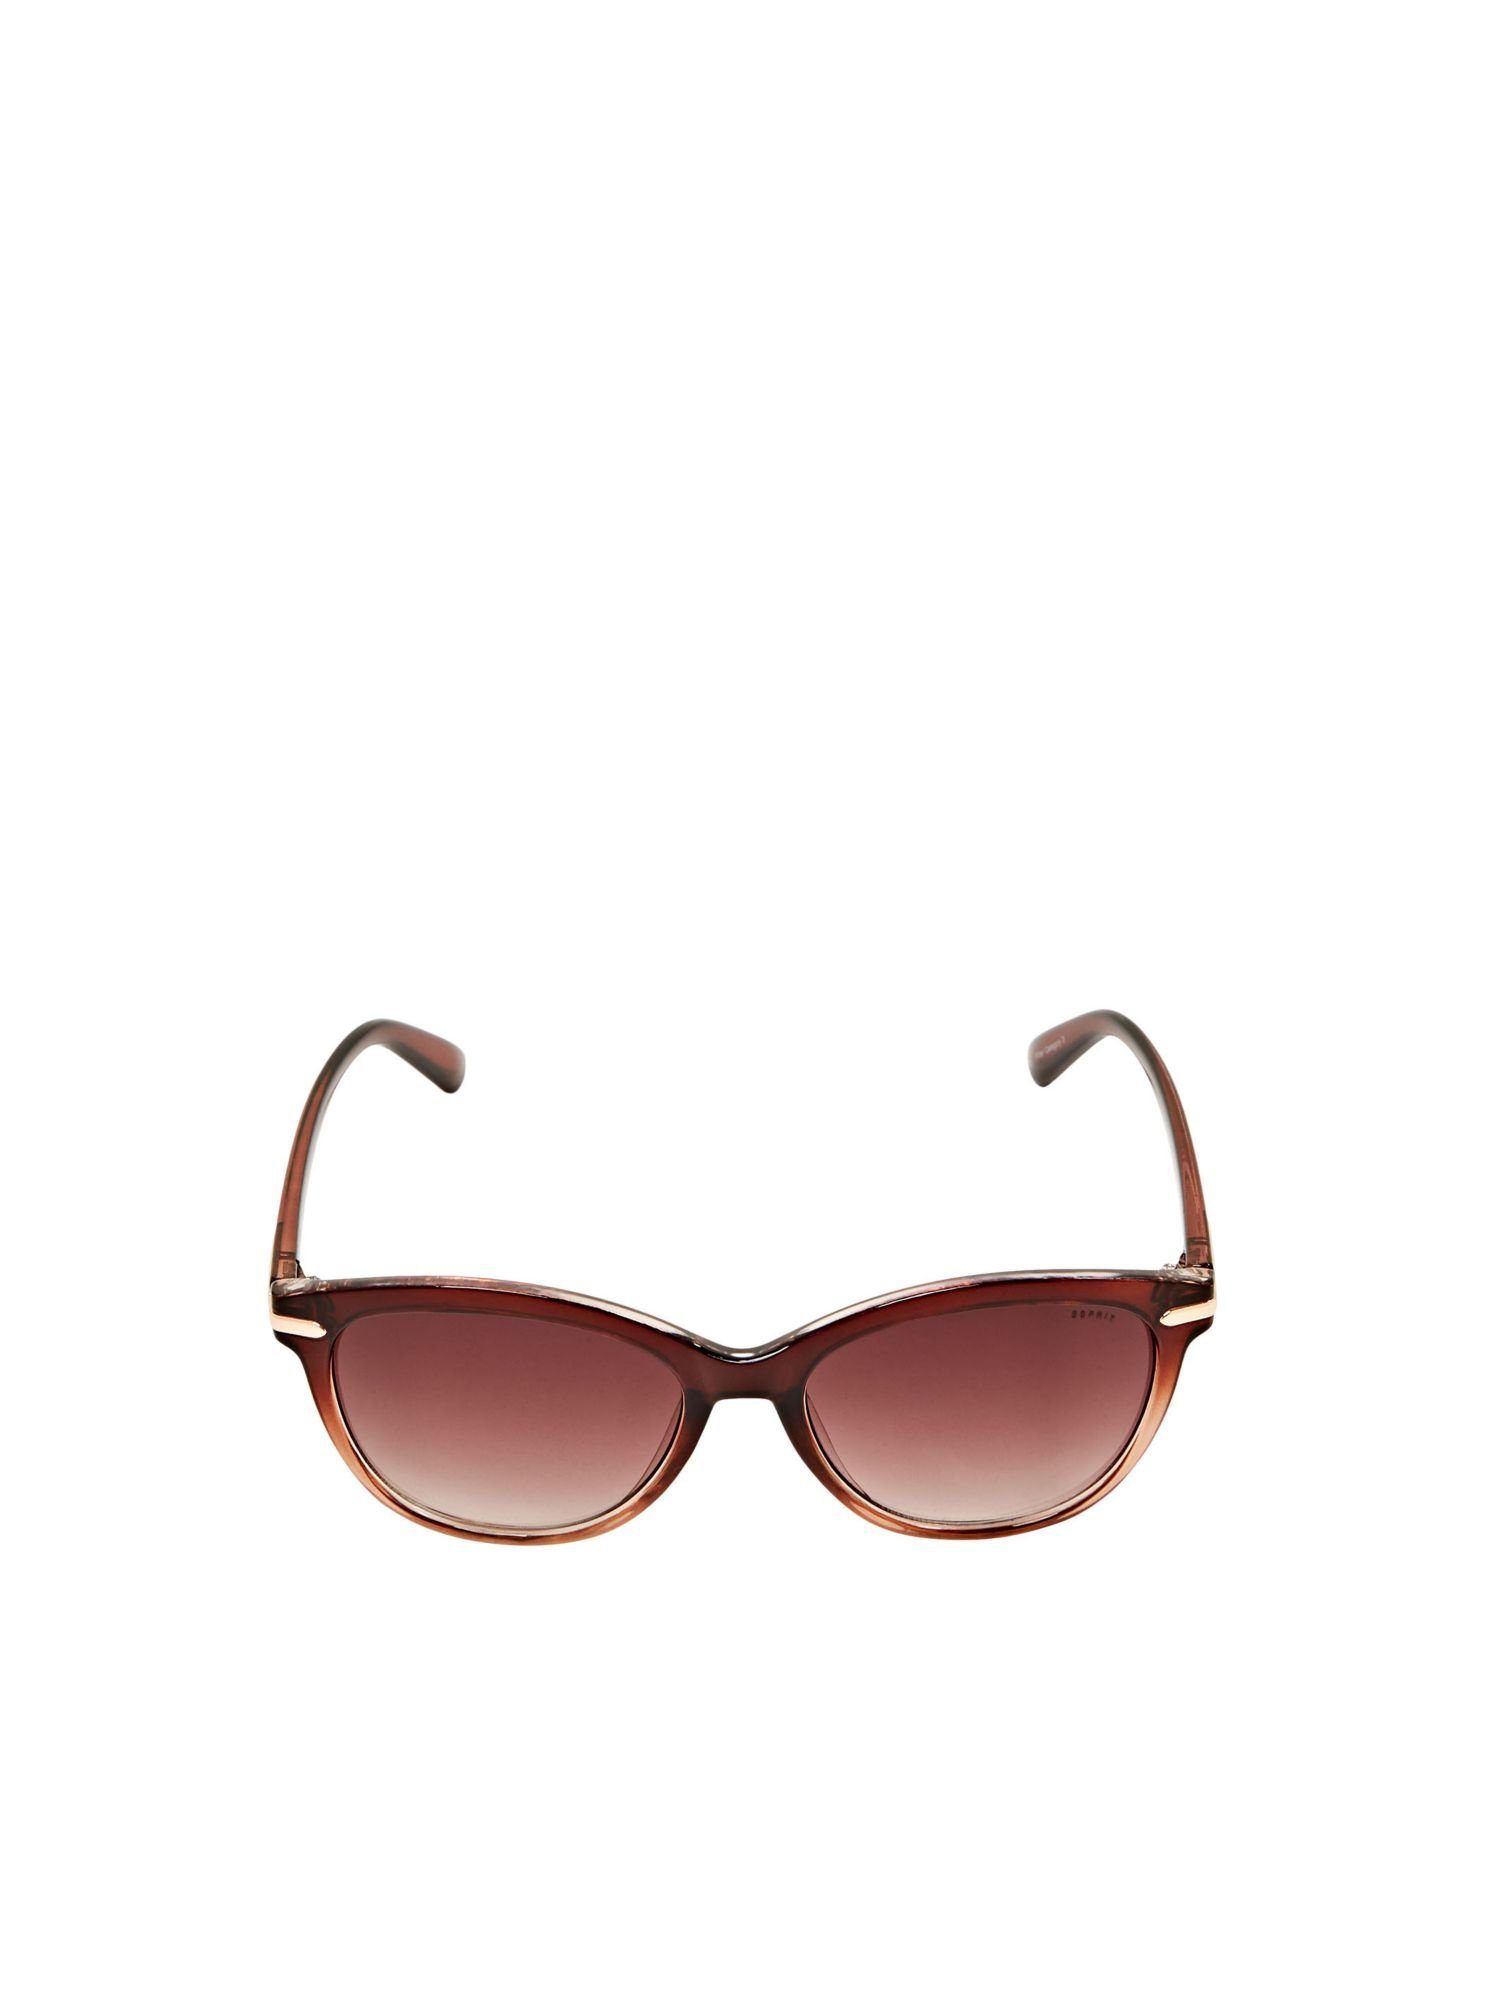 Esprit Sonnenbrille Sonnenbrille mit Farbverlauf, Farbe Grey Rose - UV  Filter-Kategorie 2: bietet UV-Schutz bei hellem Sonnenlicht